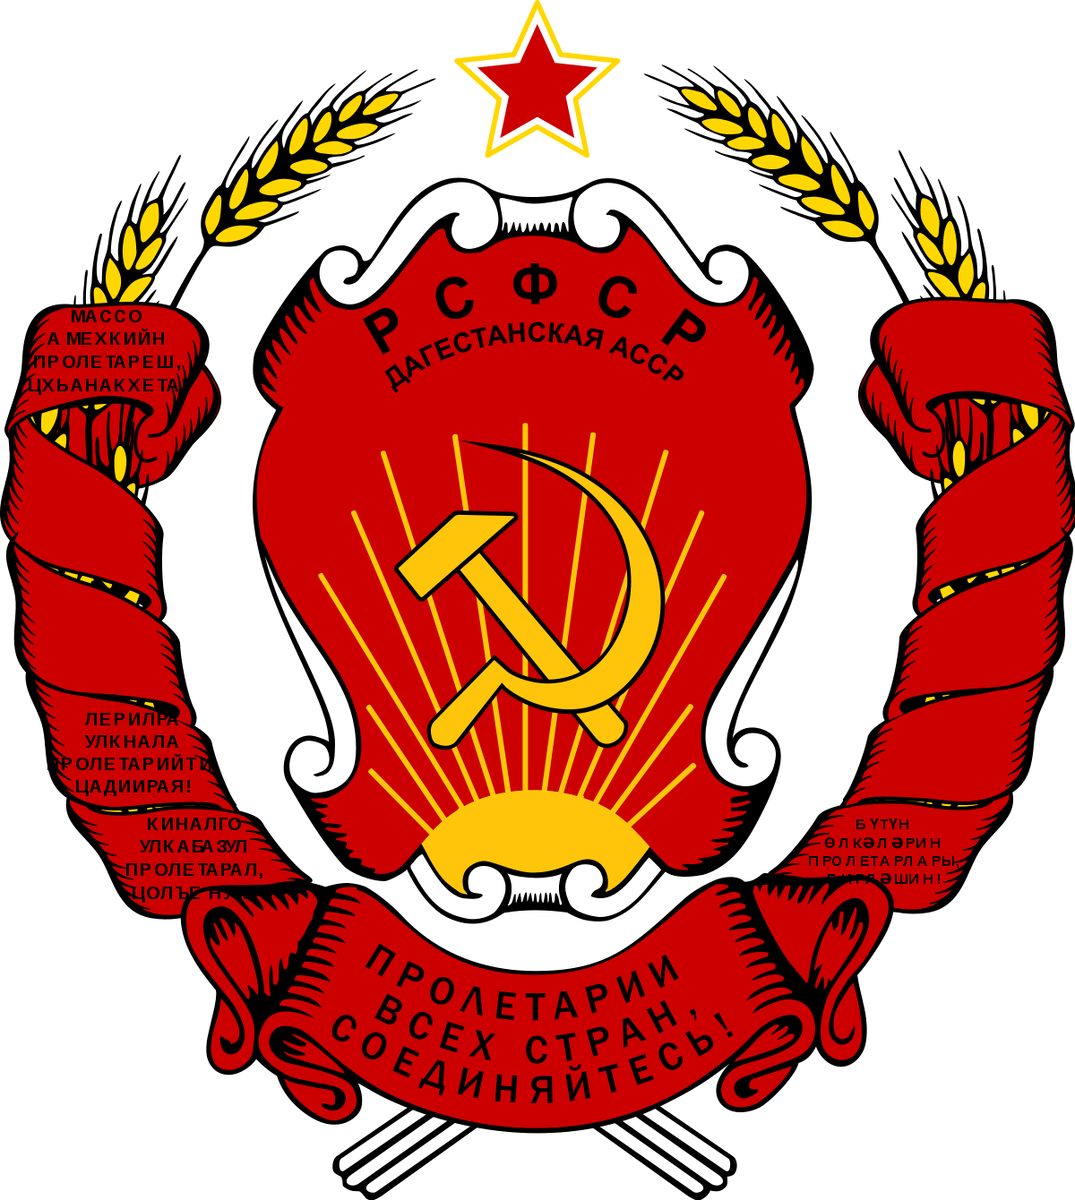 30 декабря 1922 года был создан Союз Советских Социалистических Республик. Как известно, при его создании столкнулись две точки зрения относительно того, как новый союз должен быть организован.-2